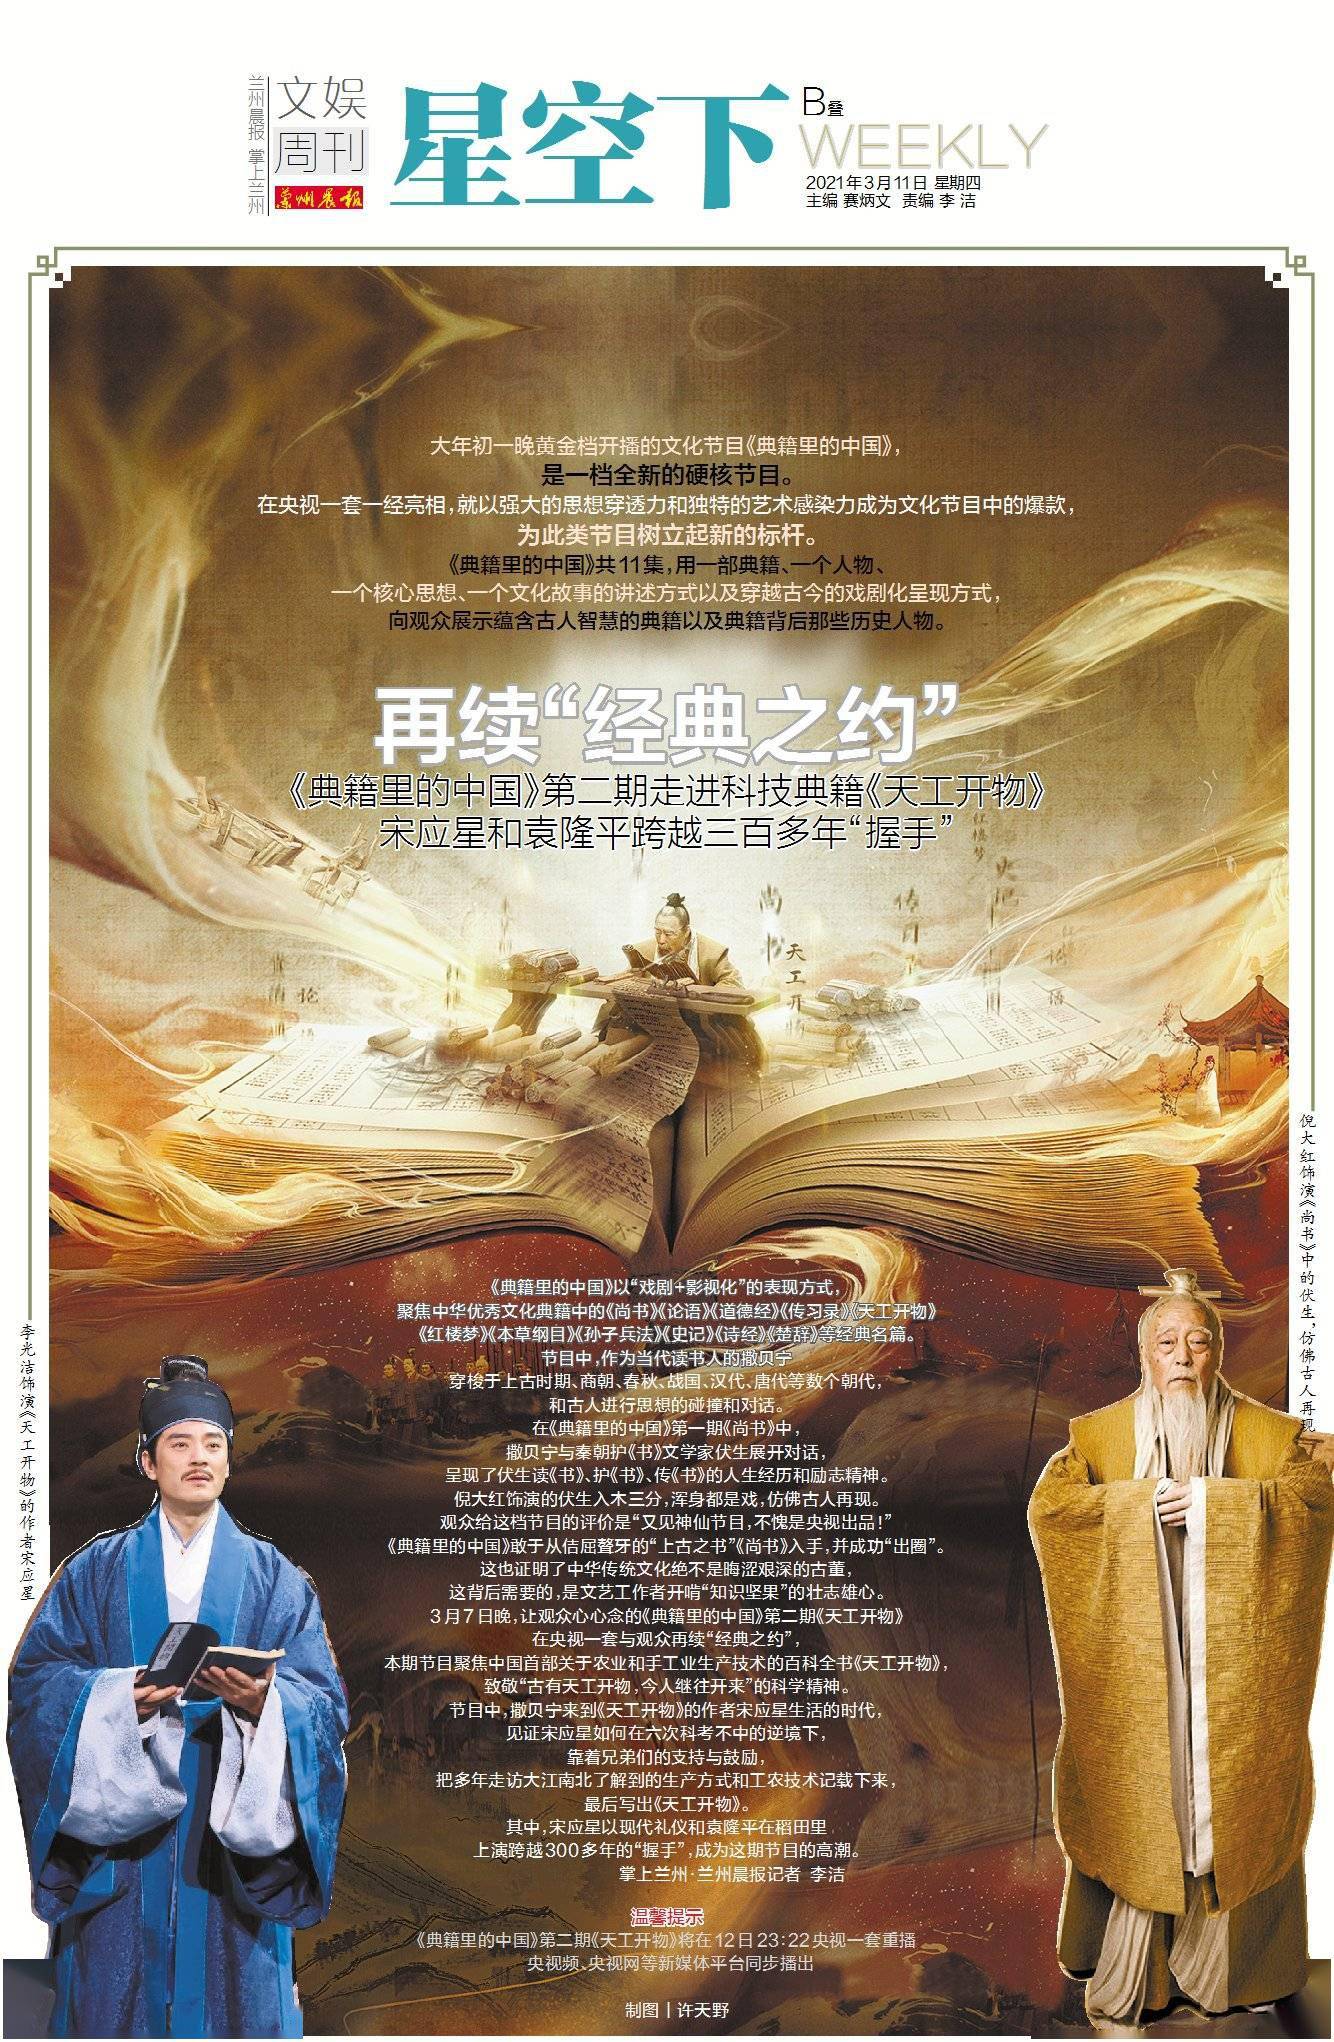 星空下丨再续 经典之约 典籍里的中国 第二期走进科技典籍 天工开物 宋应星和袁隆平跨越三百多年 握手